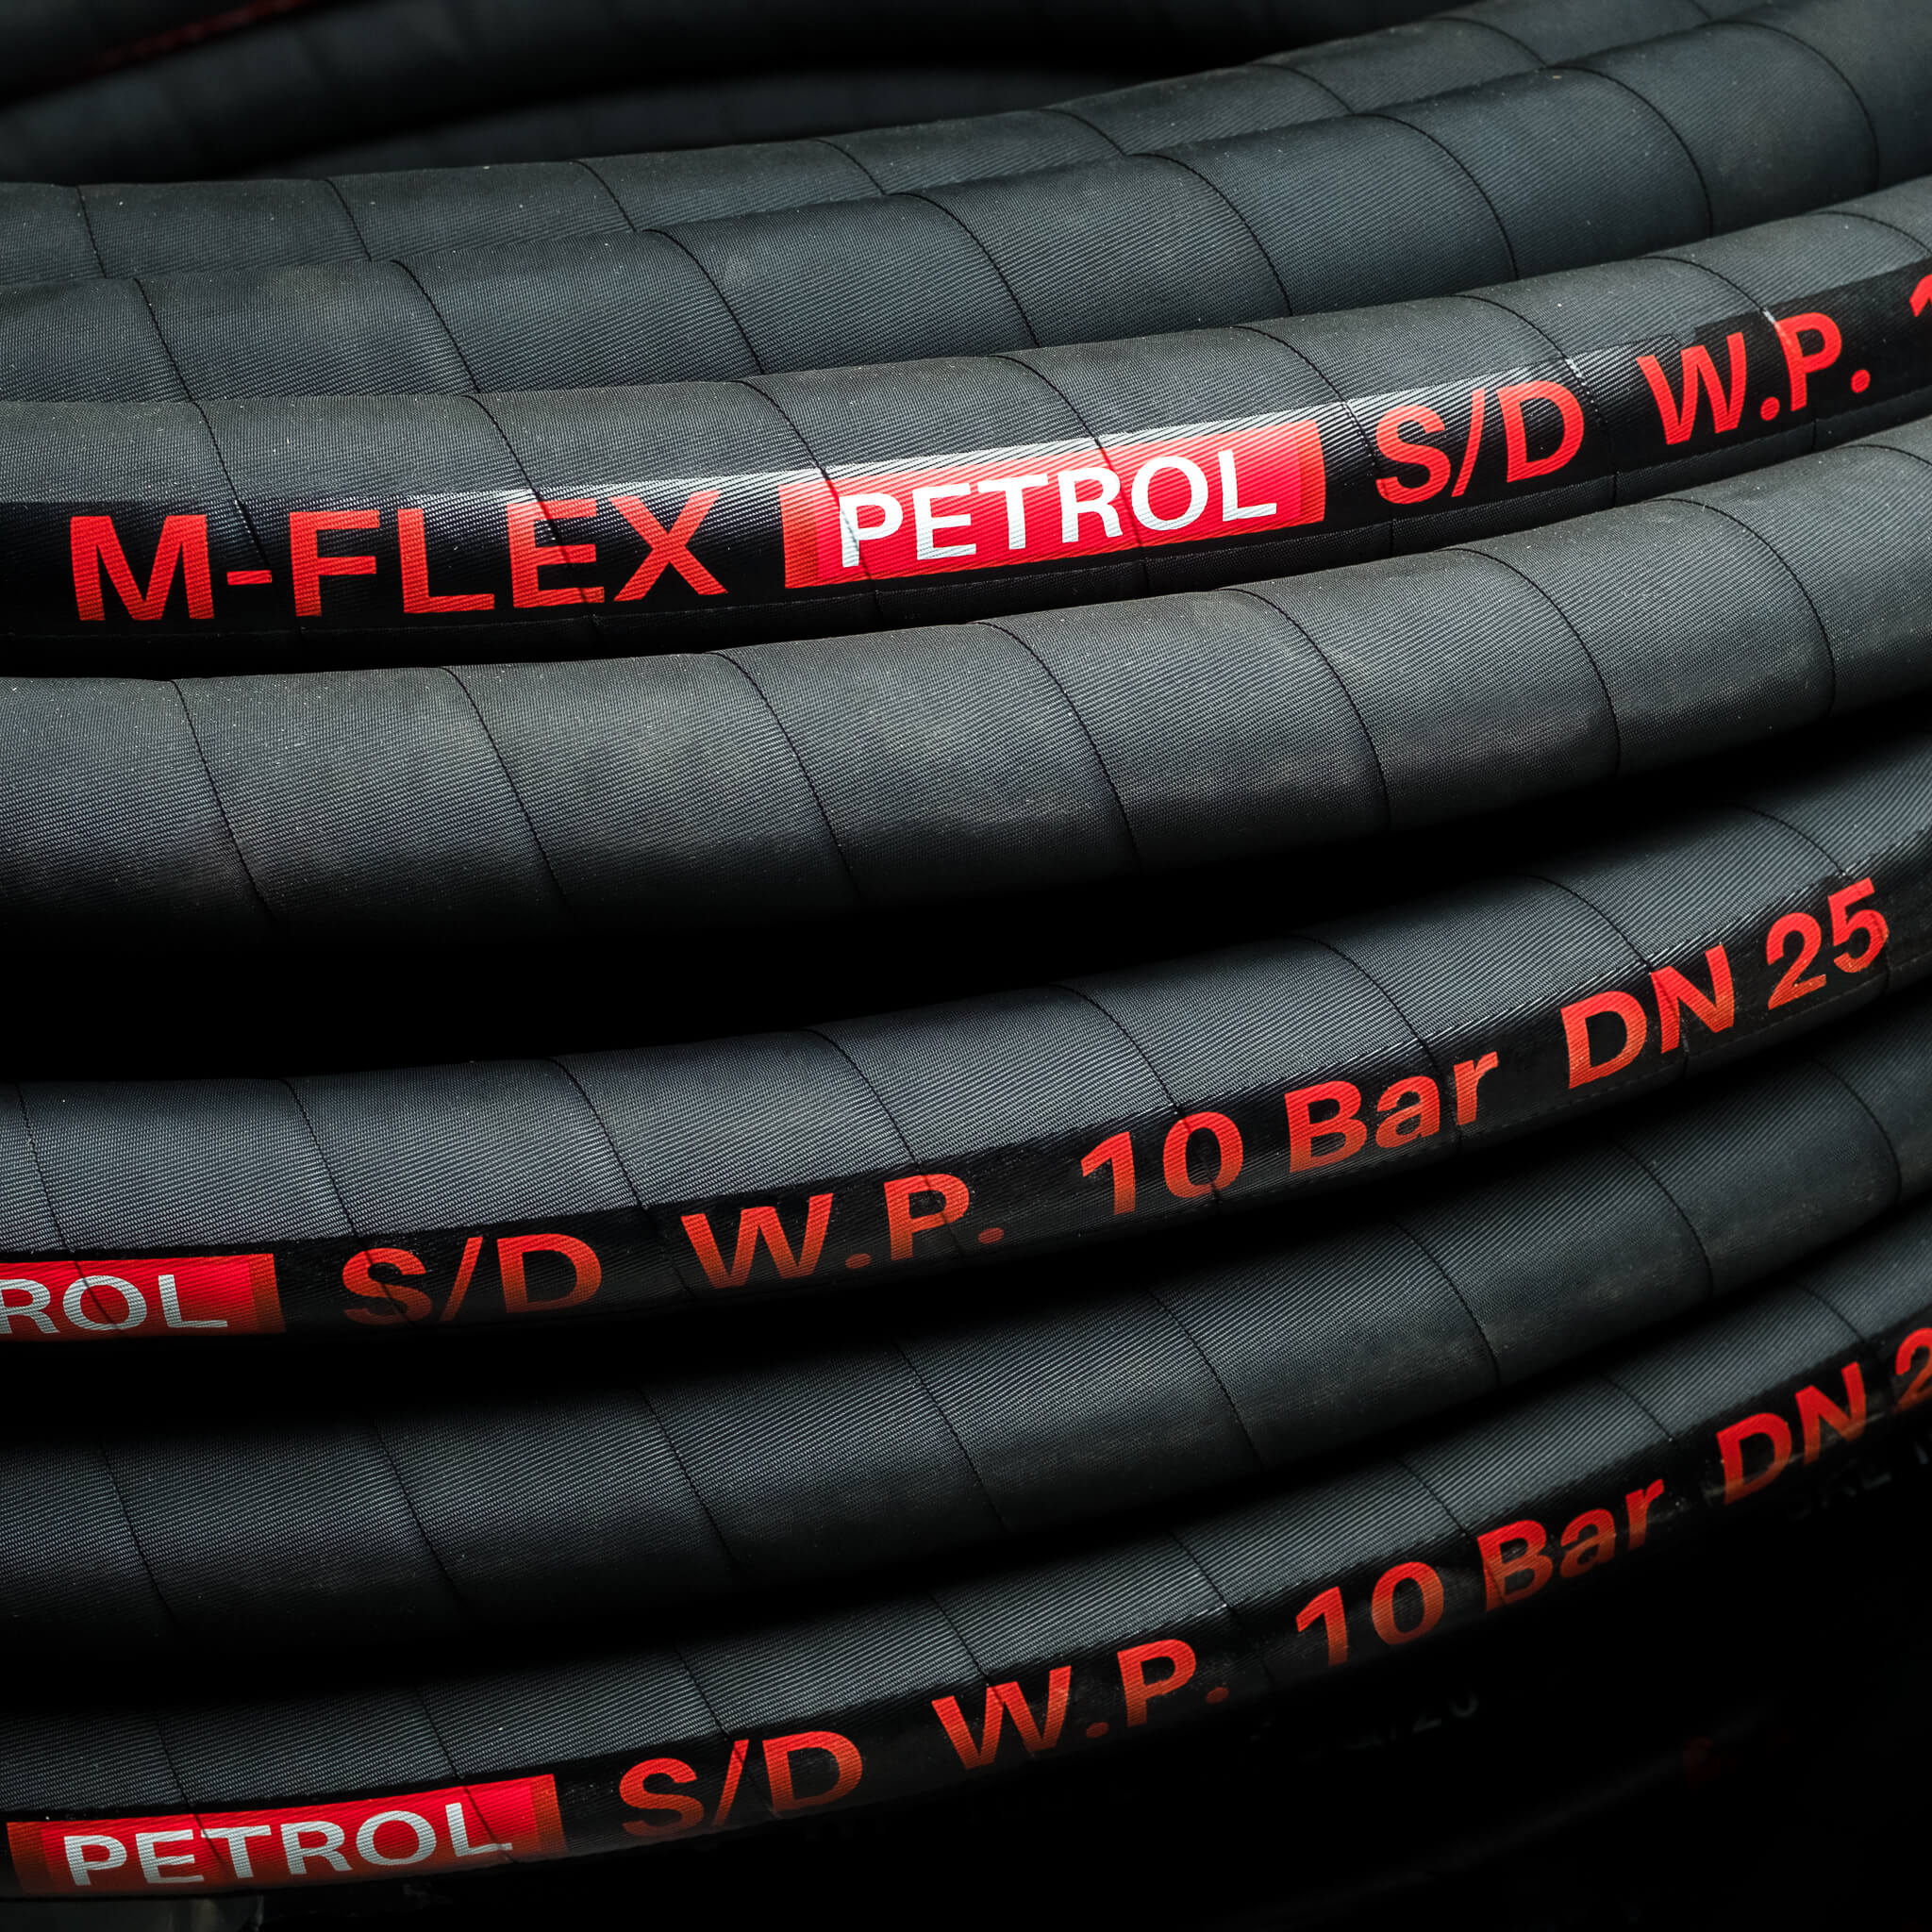 Hose for petroleum products type: M-FLEX PETROL S/D